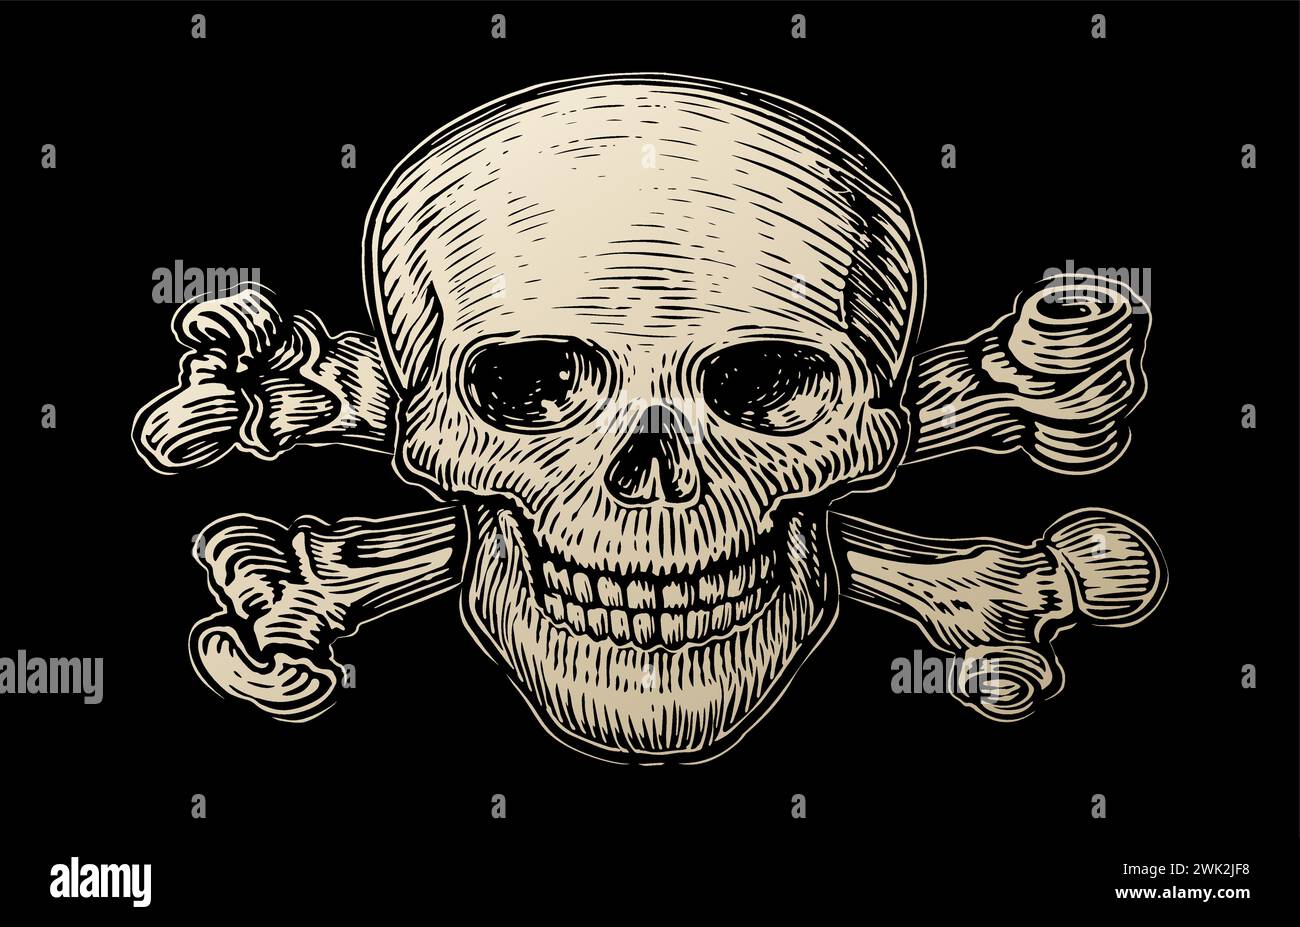 Cranio umano su sfondo nero. Bandiera dei pirati con la malvagia Jolly Roger con le ossa incrociate. Illustrazione vettoriale vintage Illustrazione Vettoriale